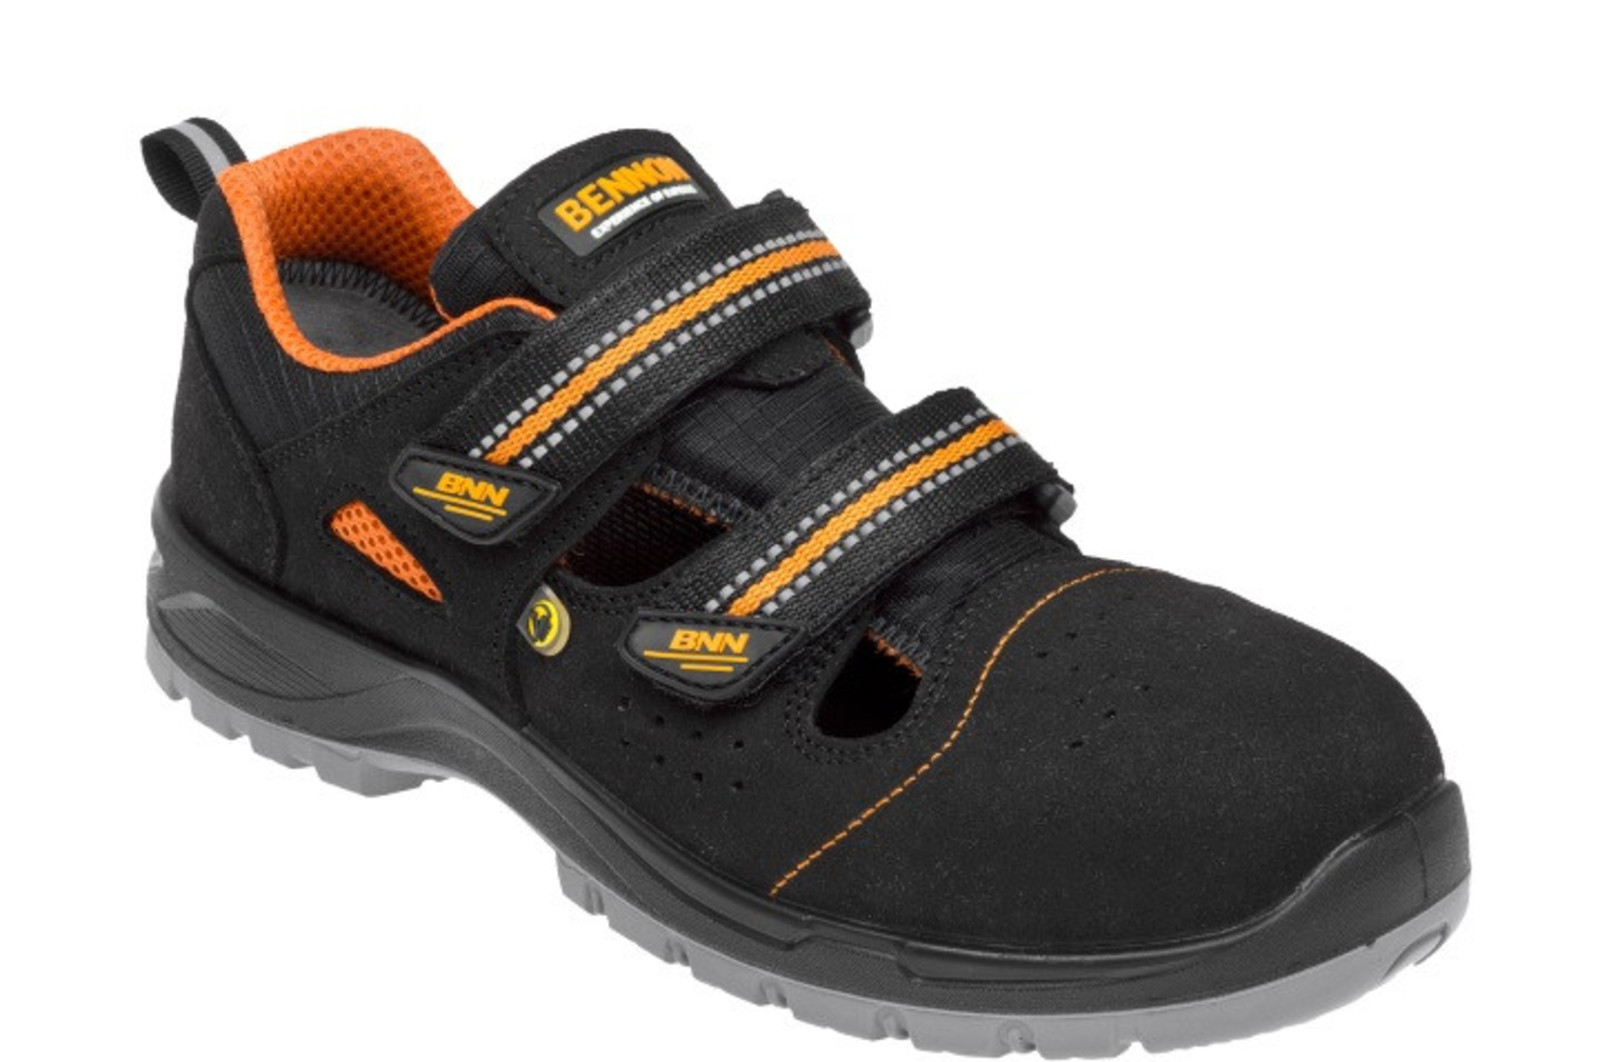 Bezpečnostné sandále Bennon Nux S1P ESD metal free - veľkosť: 39, farba: čierna